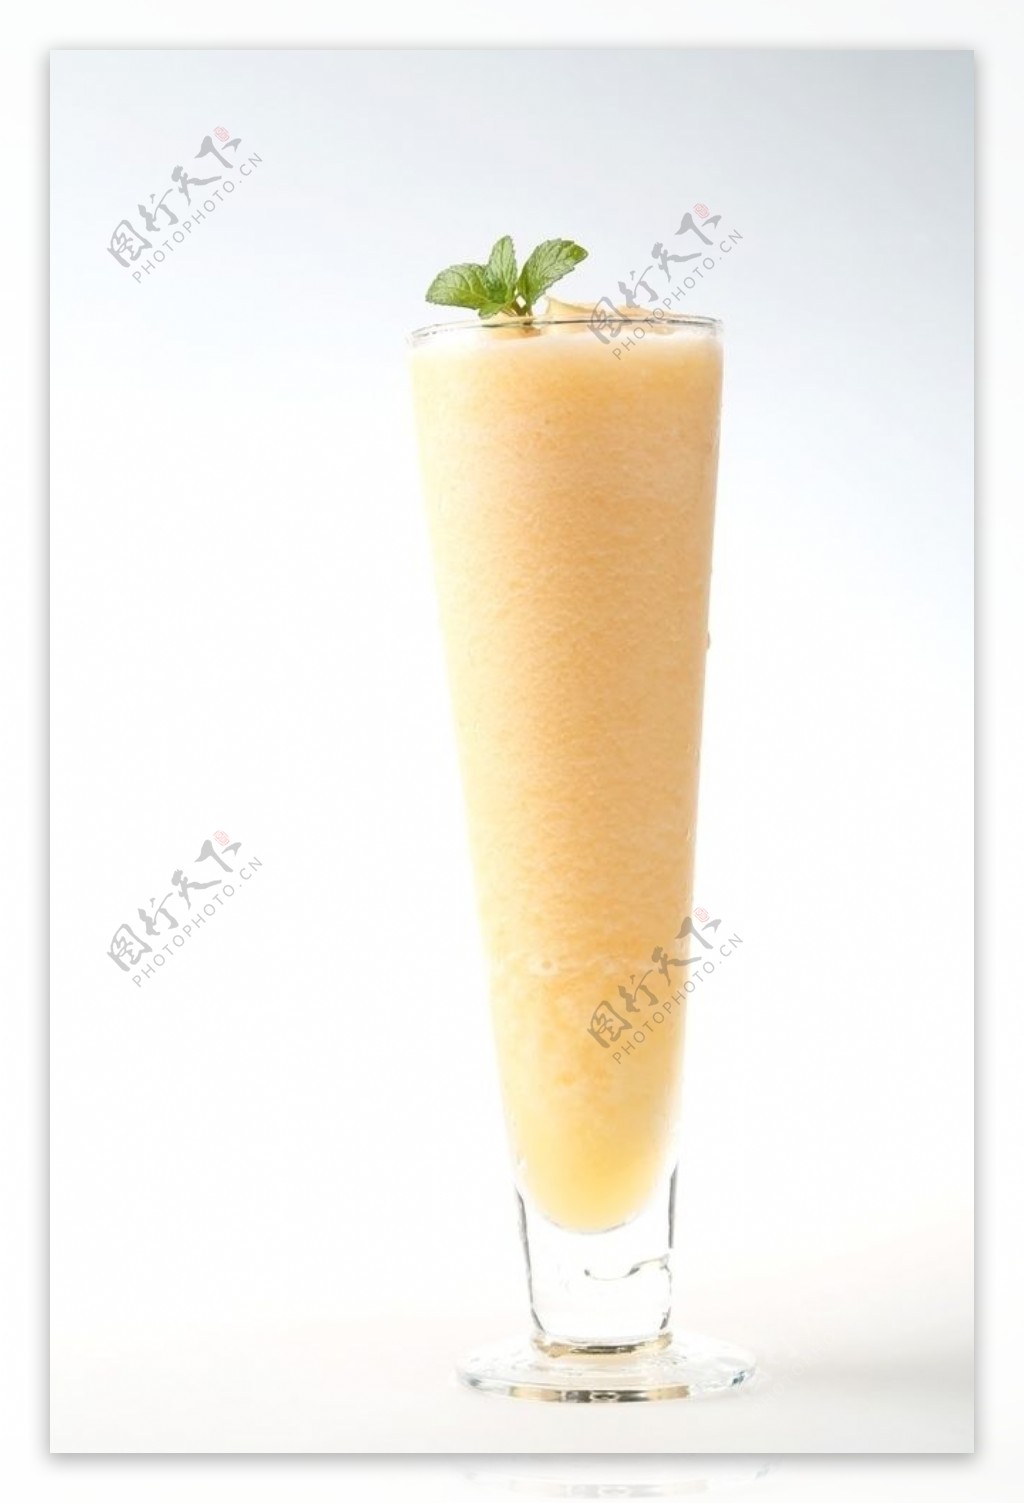 哈密瓜汁图片